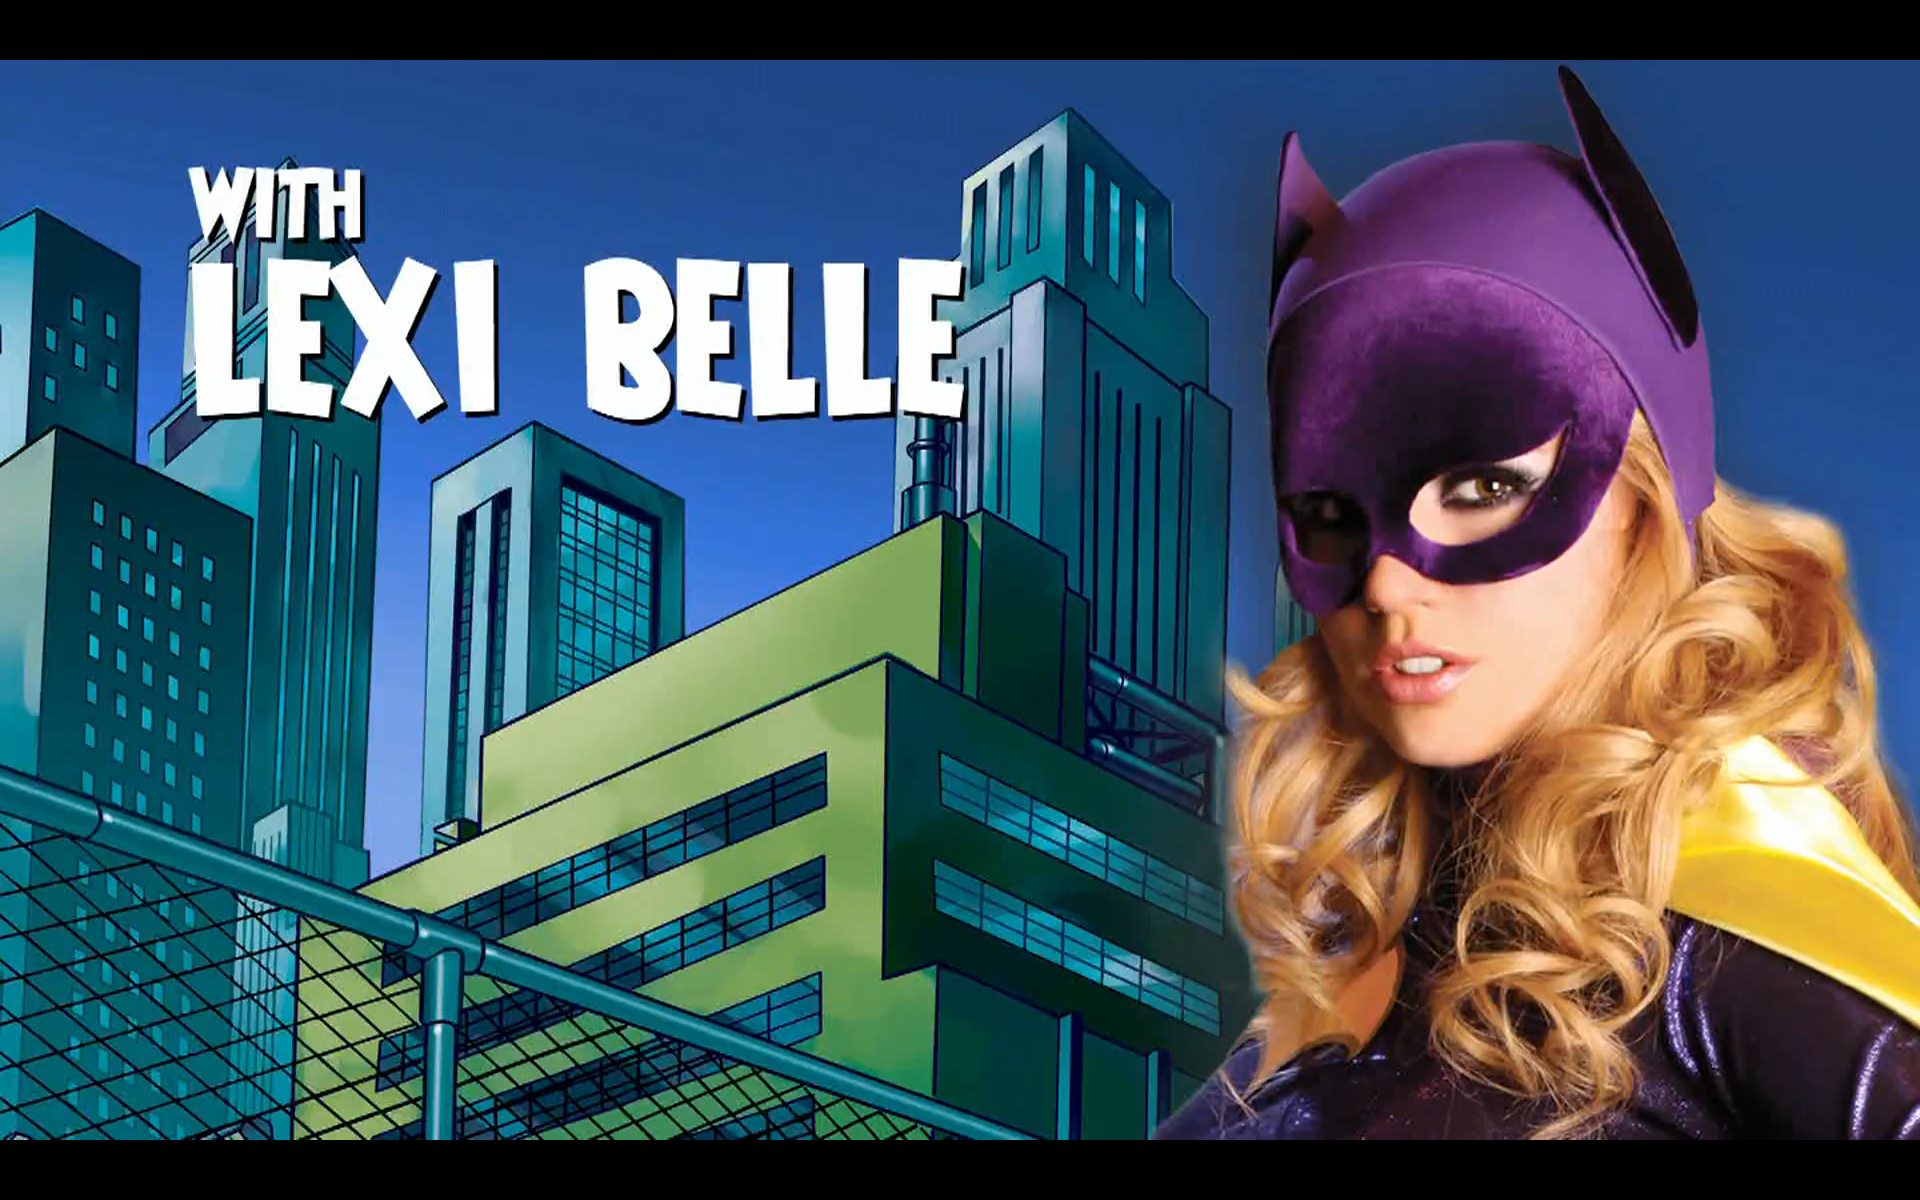 1920px x 1200px - porn Lexi belle Batgirl